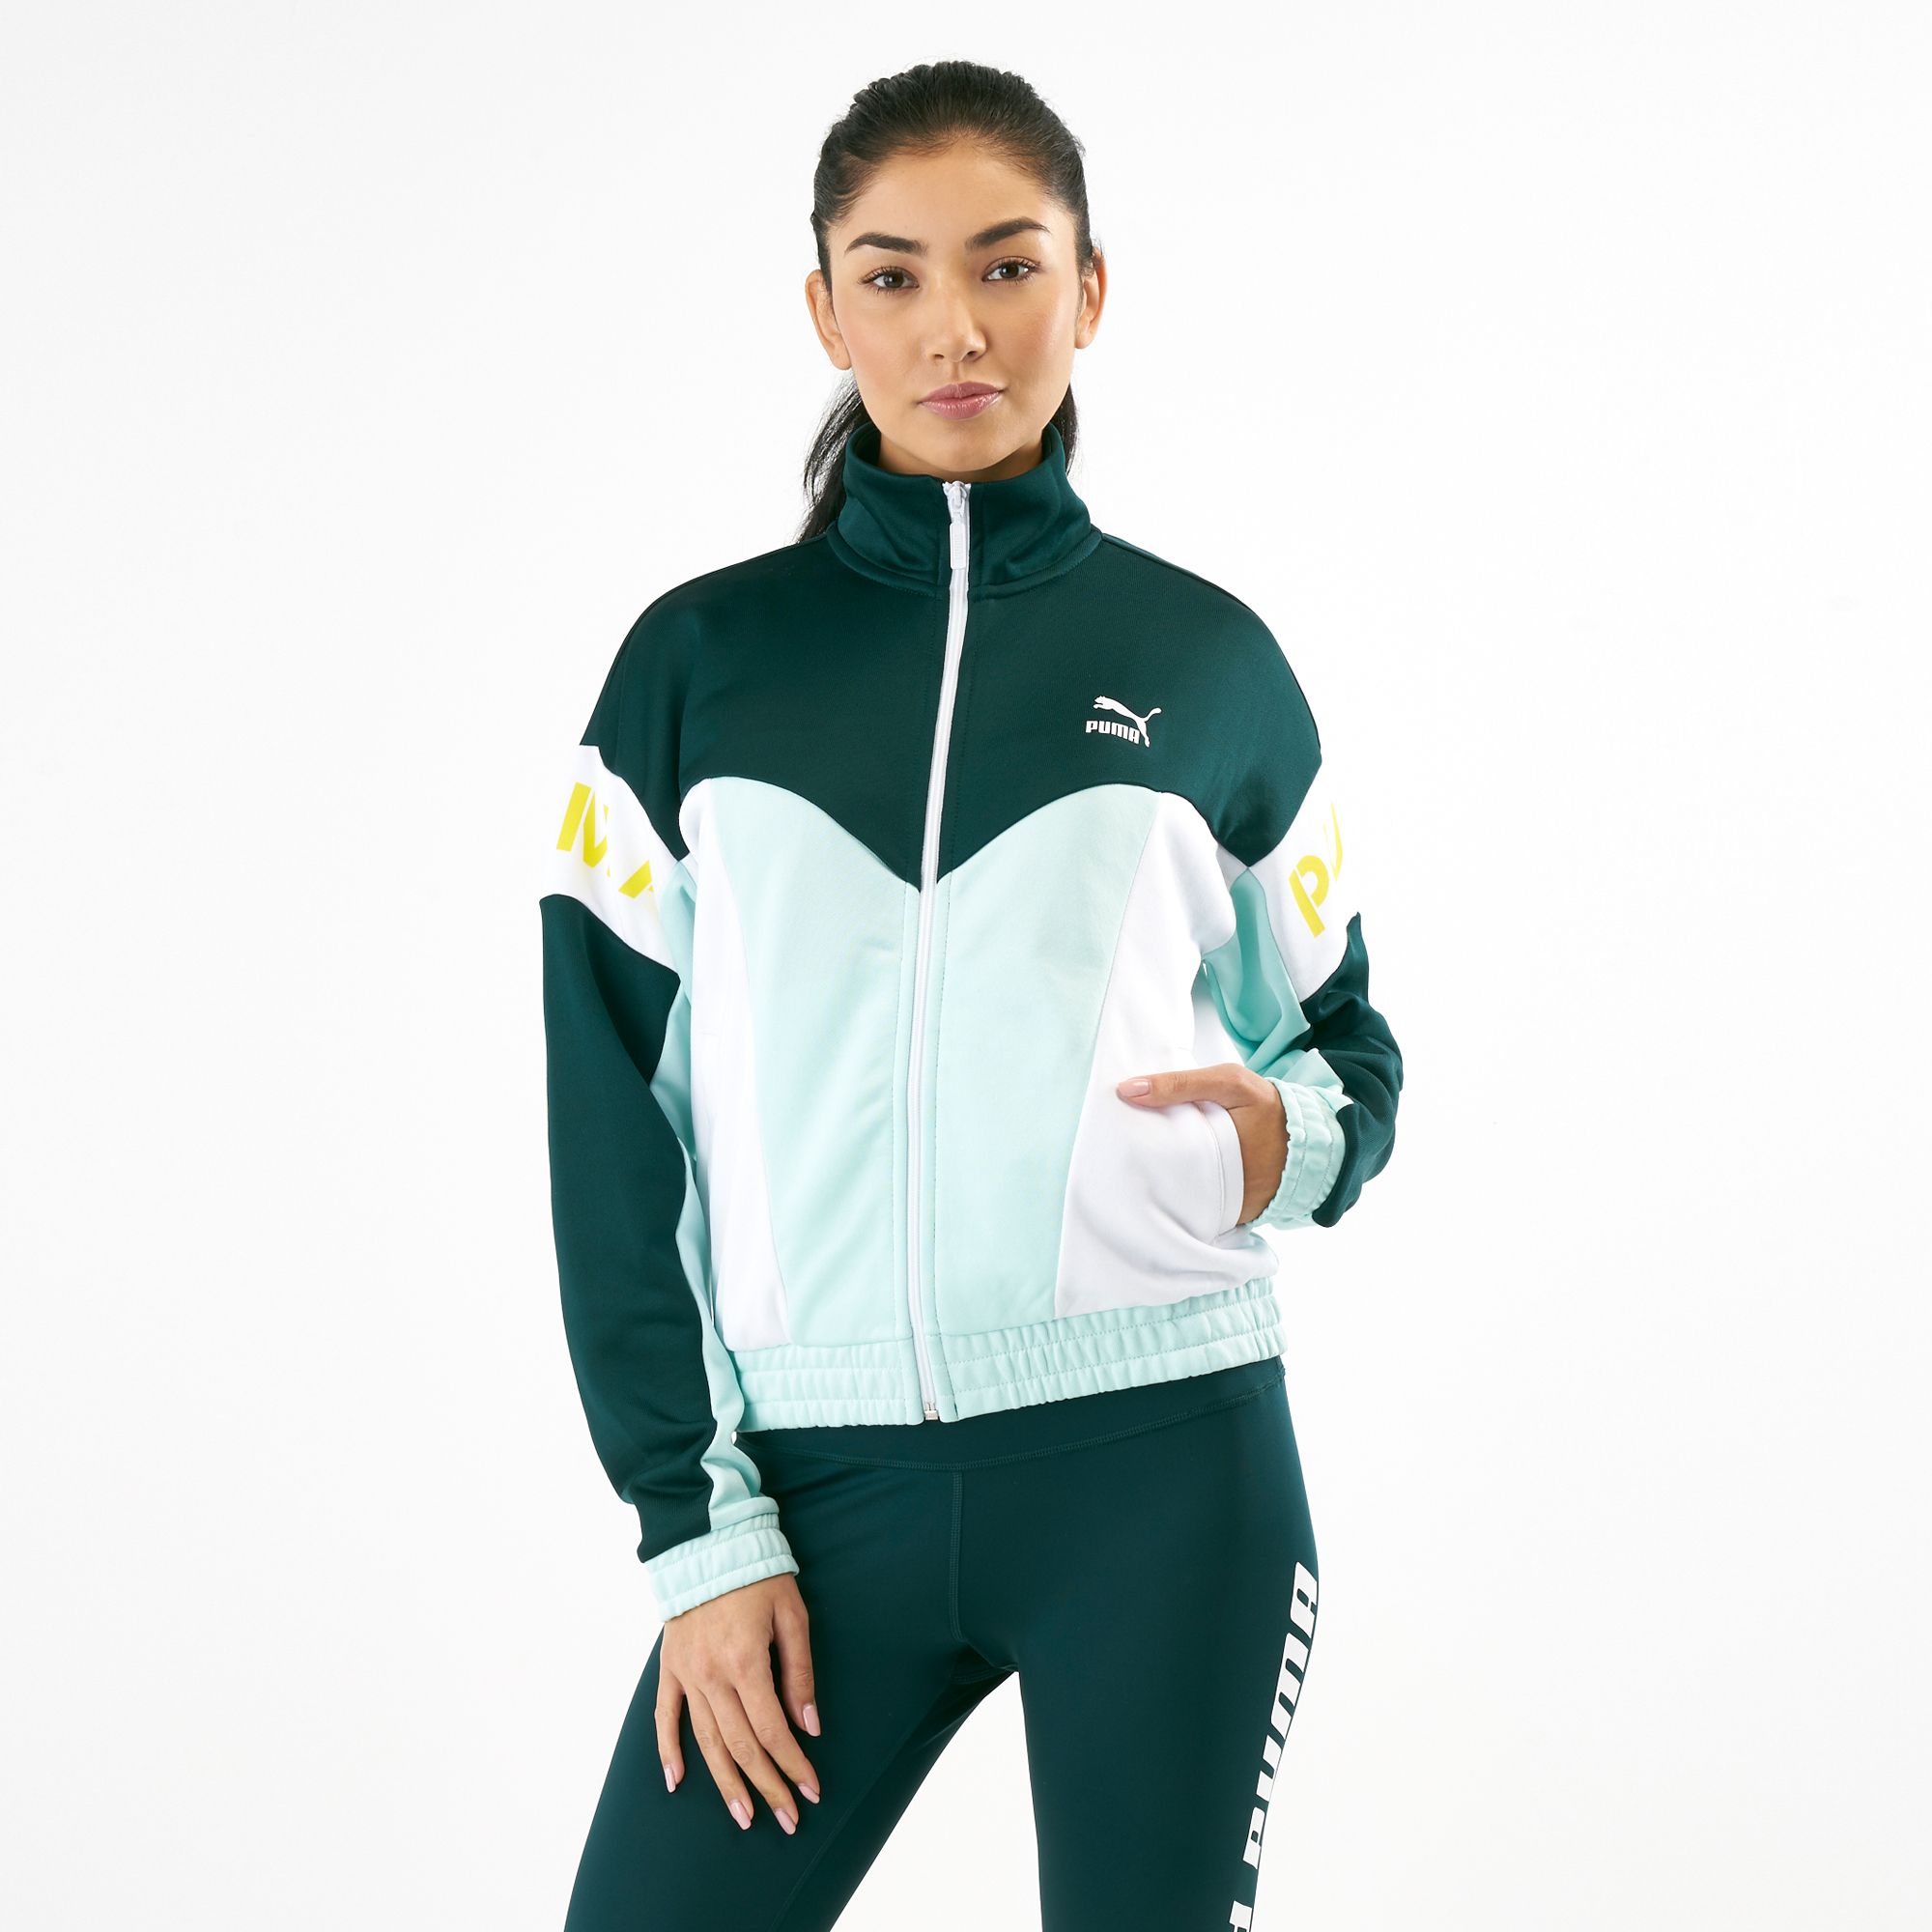 xtg 94 women's track jacket